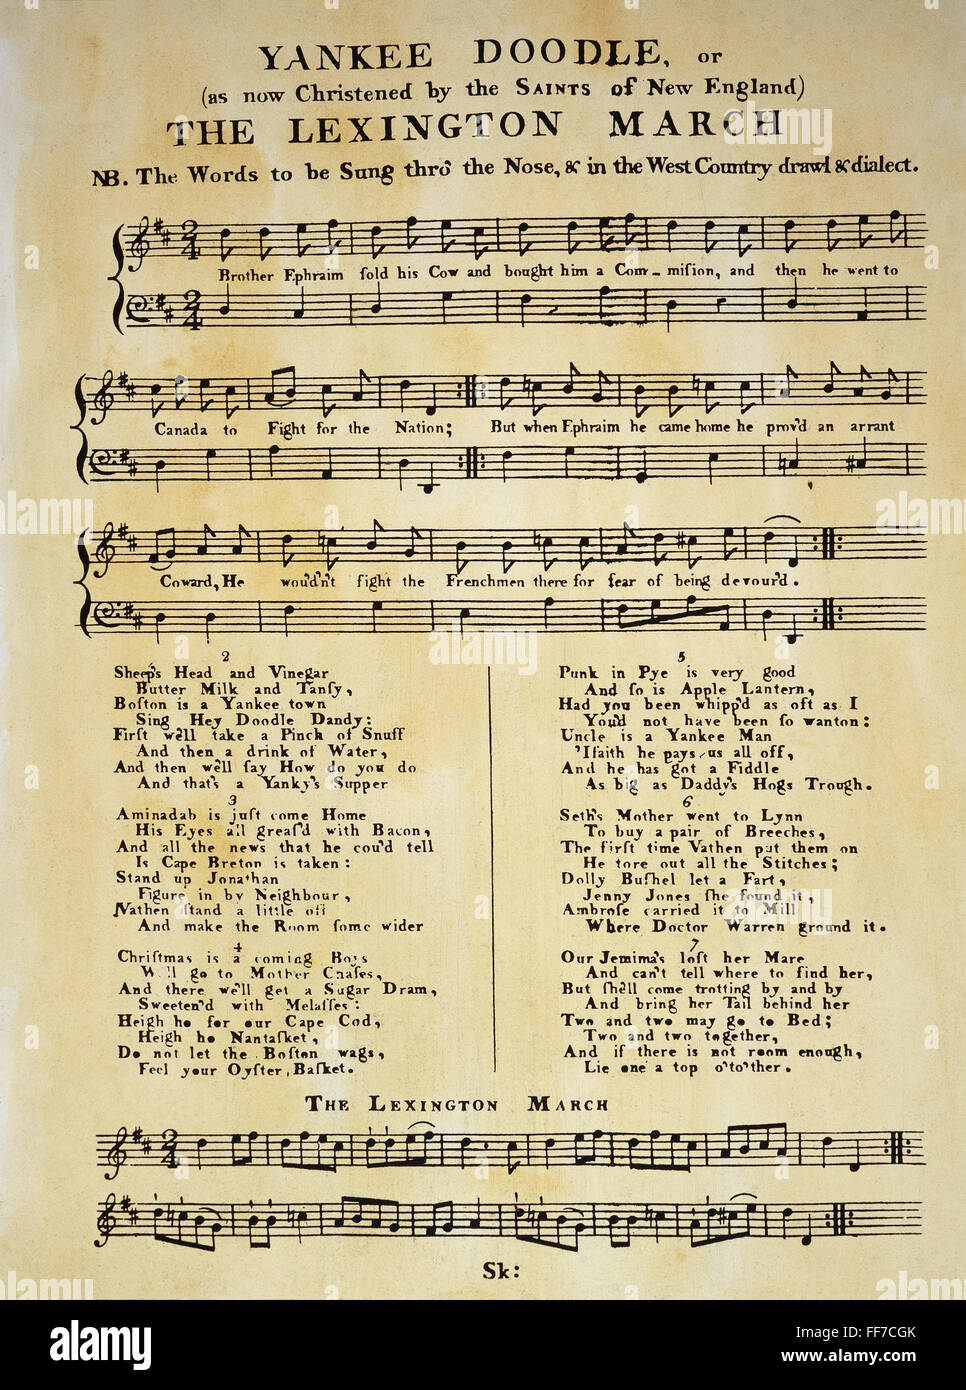 YANKEE DOODLE MUSIK, 1775. /nThe erste Veröffentlichung von "Yankee Doodle" als Noten, London, 1775. Stockfoto